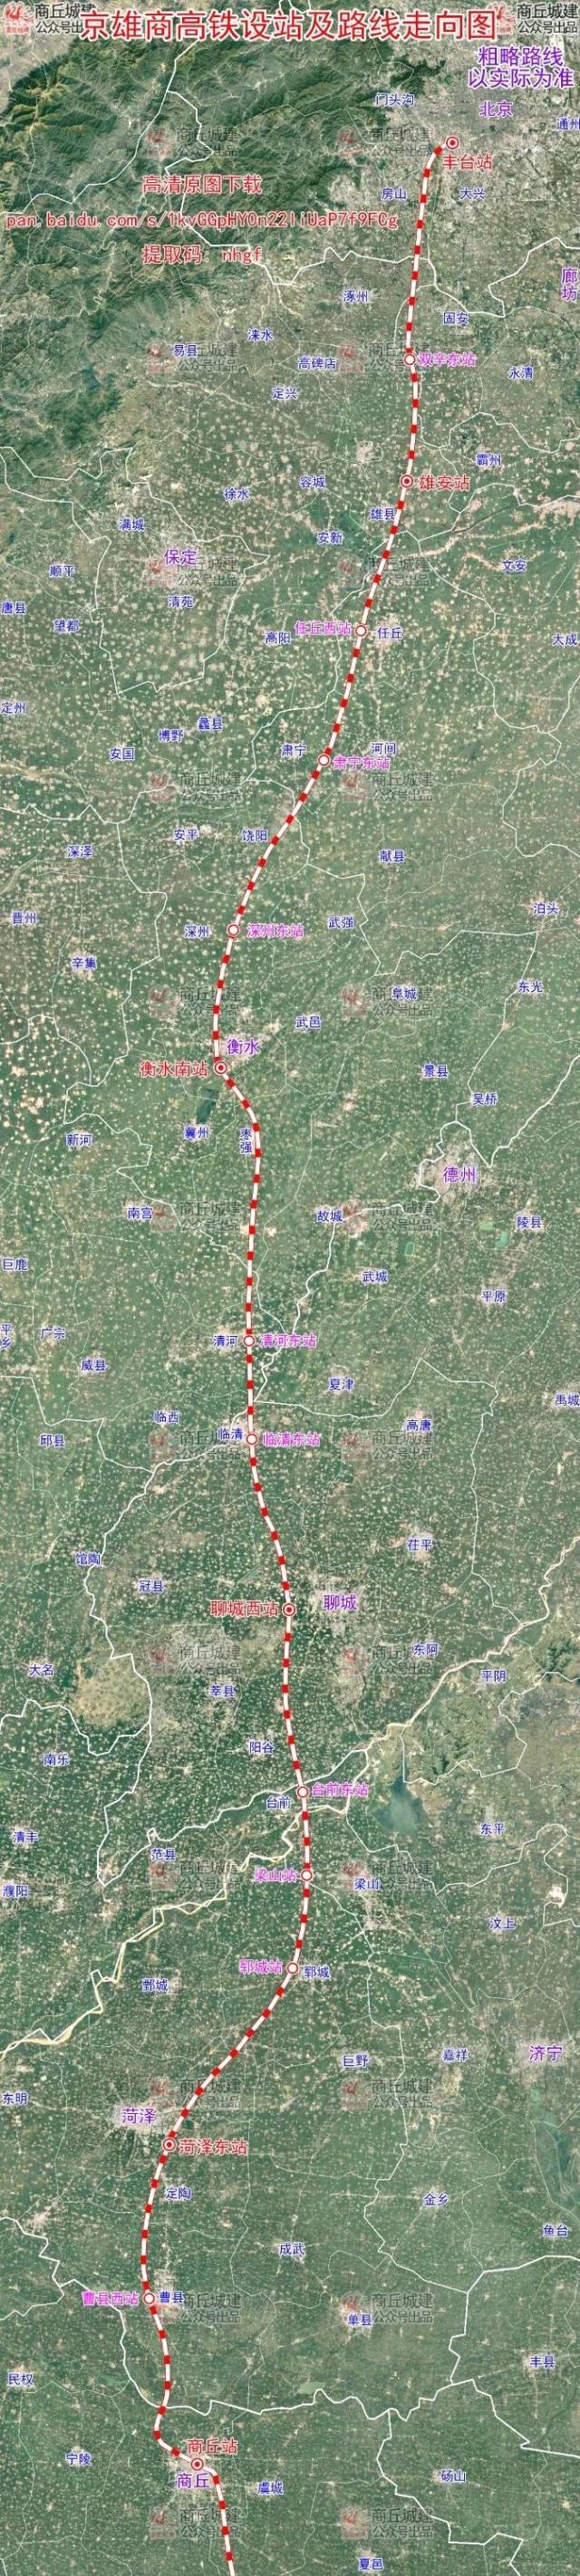 濮潢铁路平舆段卫星图图片